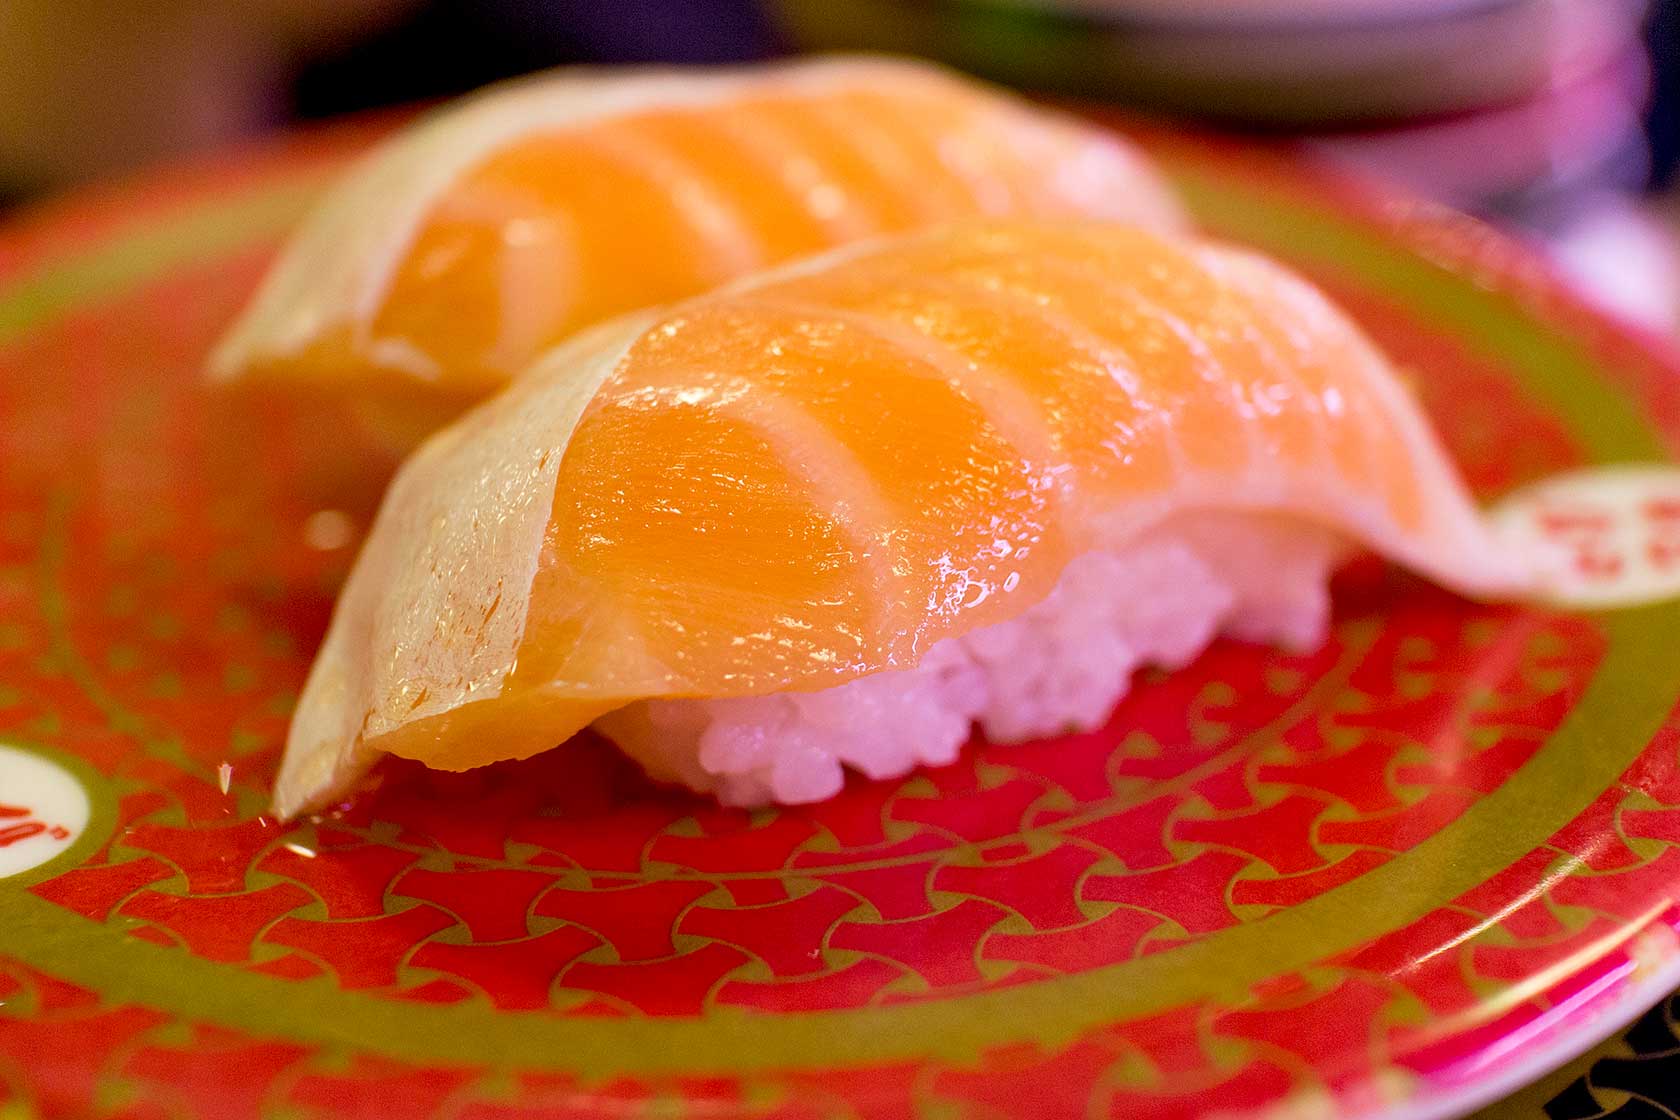 回転寿司でおいしそうな写真を撮りたい 今回は100円寿司の はま寿司 で挑戦 オサーンドットコム